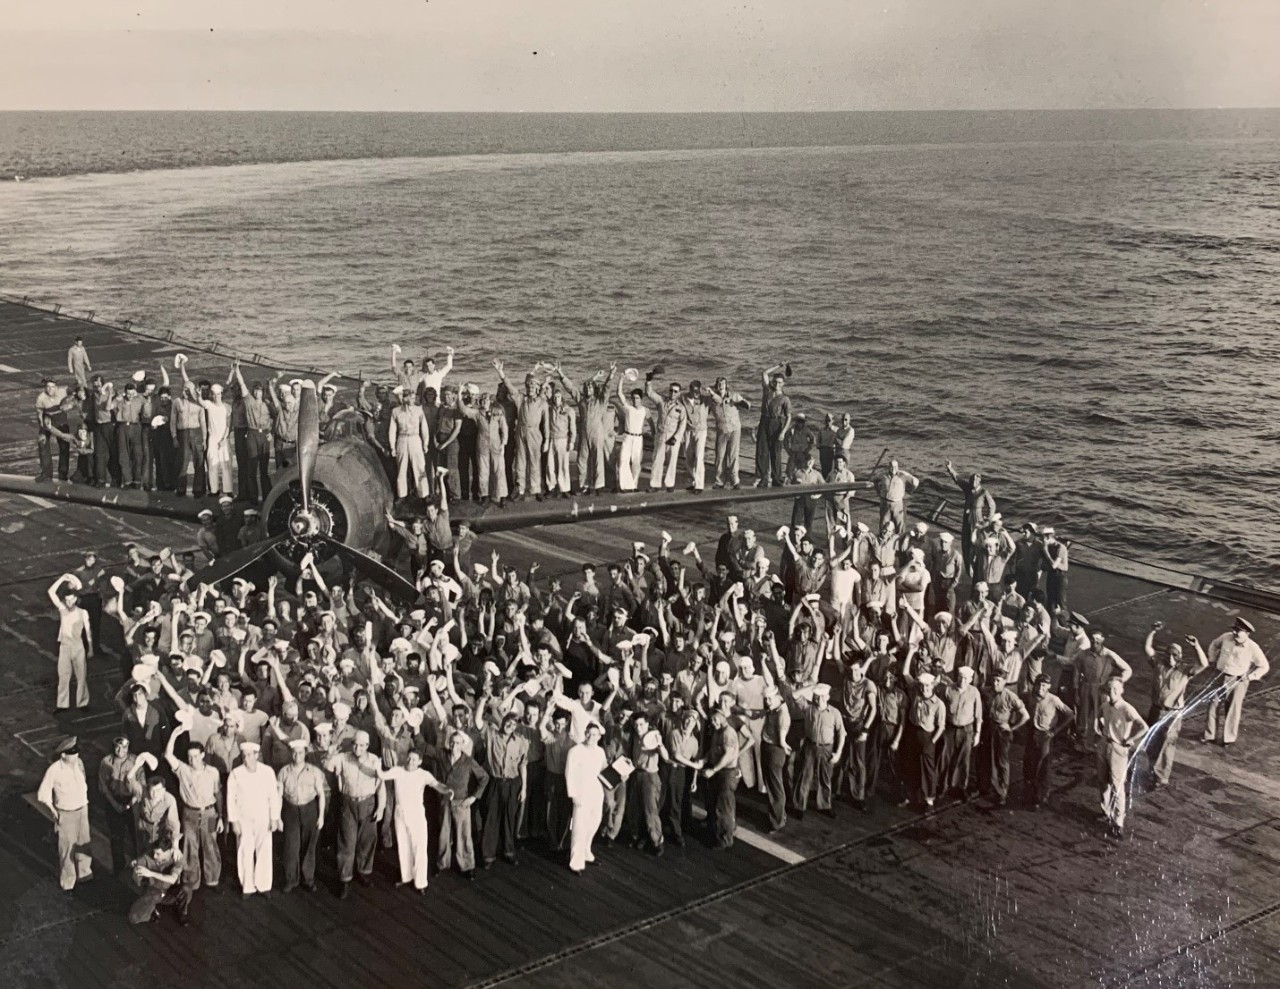 Crew of USS Sable (IX-81) c. 1943